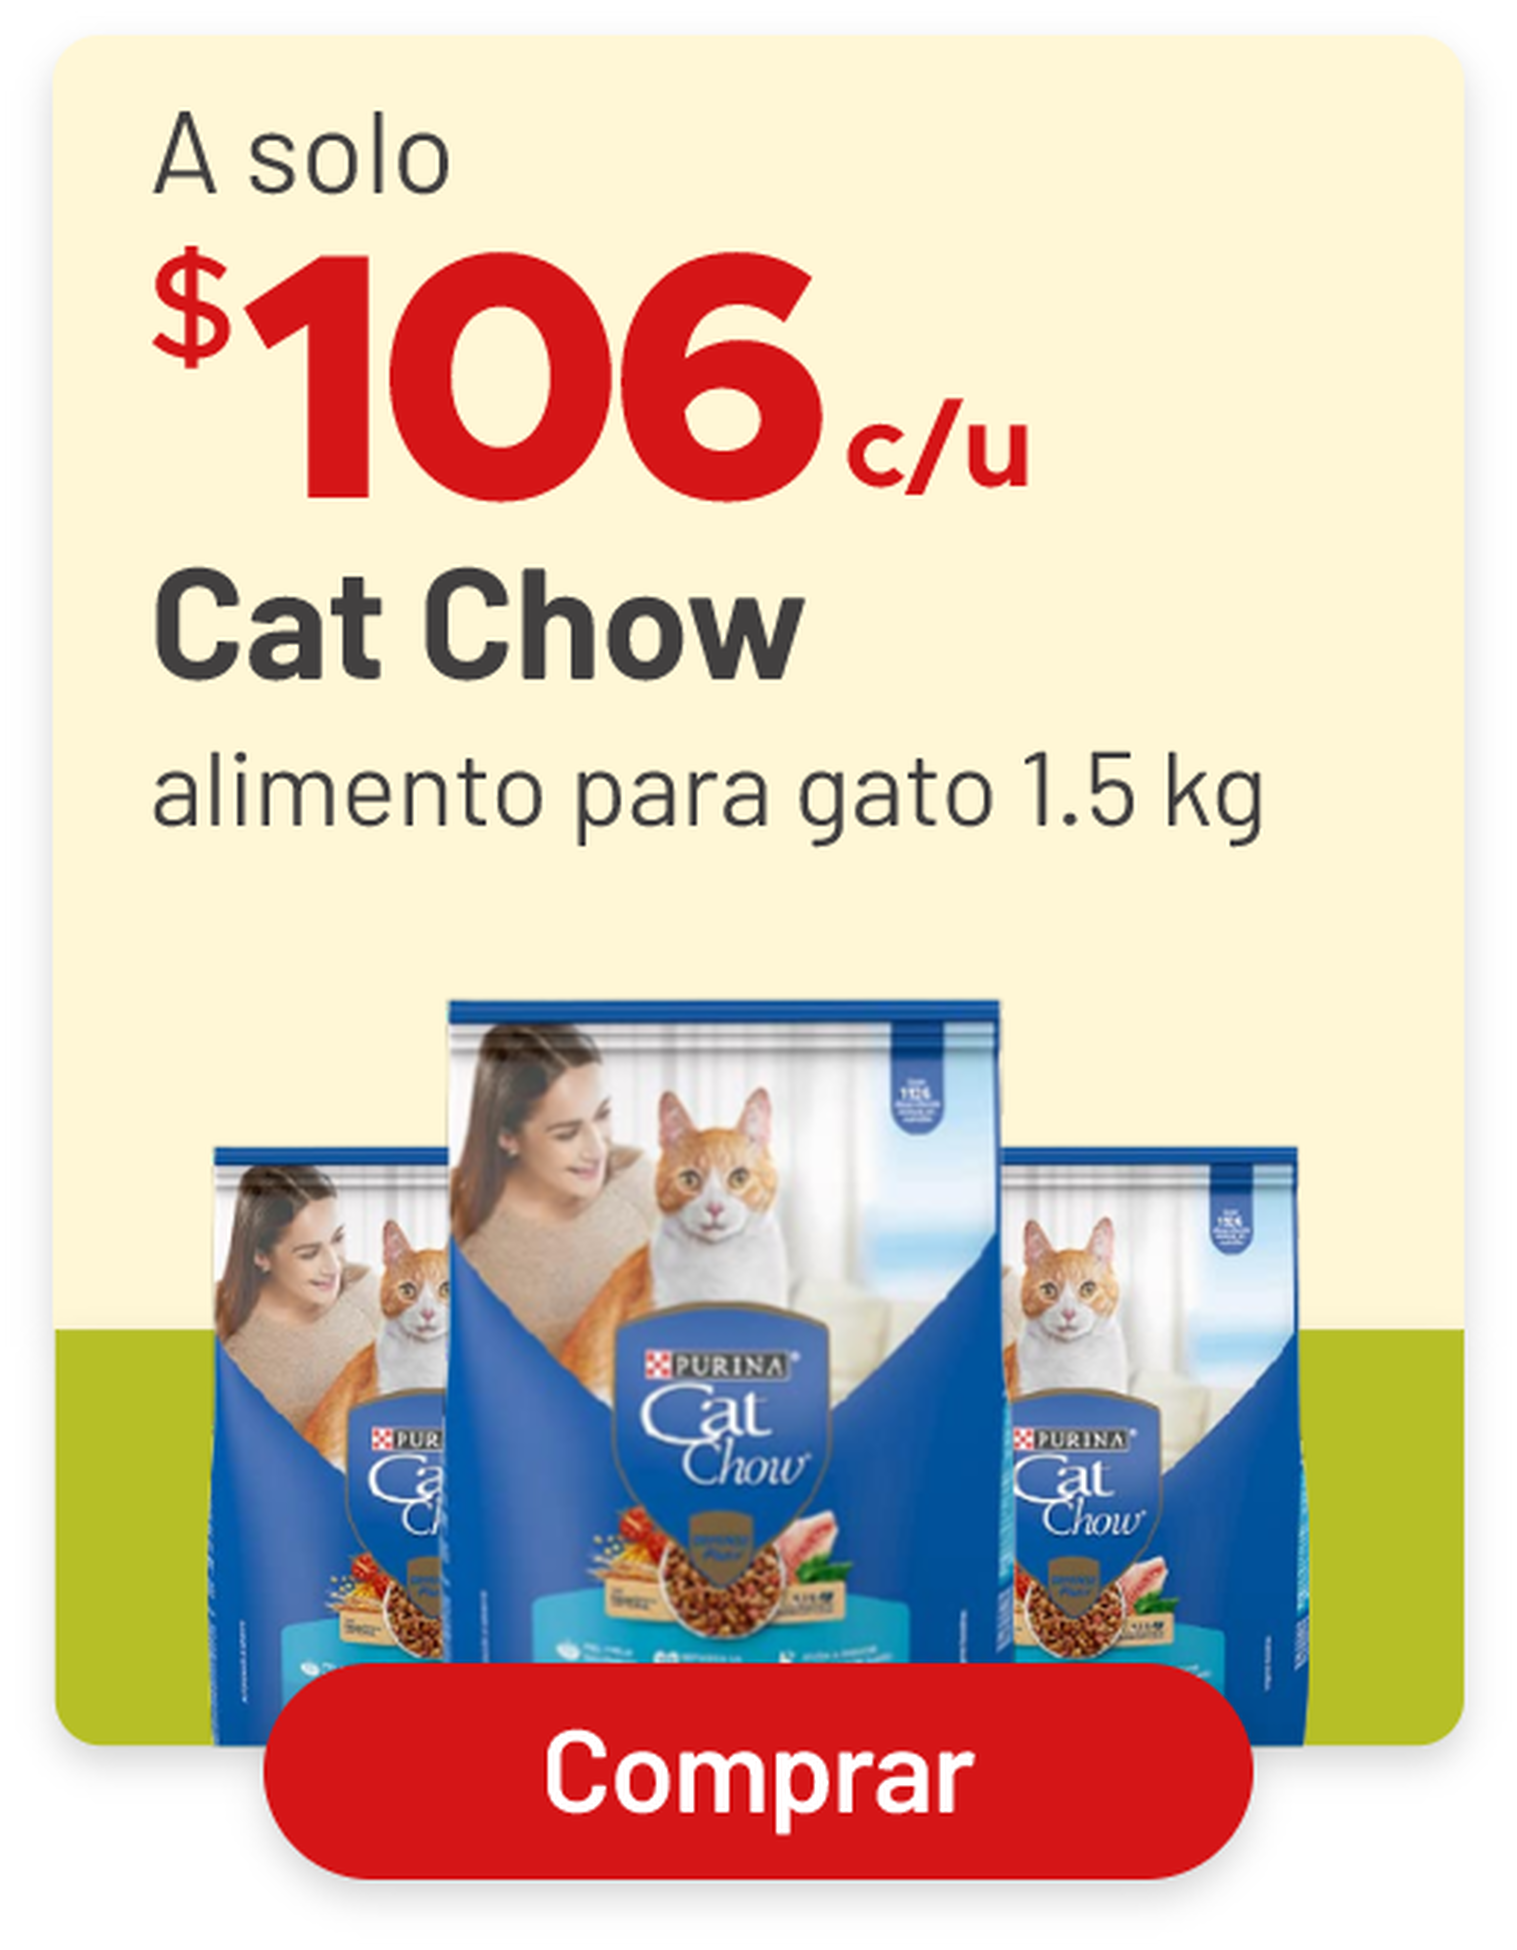 Todos el alimento para gato cat chow 1.5 kilos a solo $106